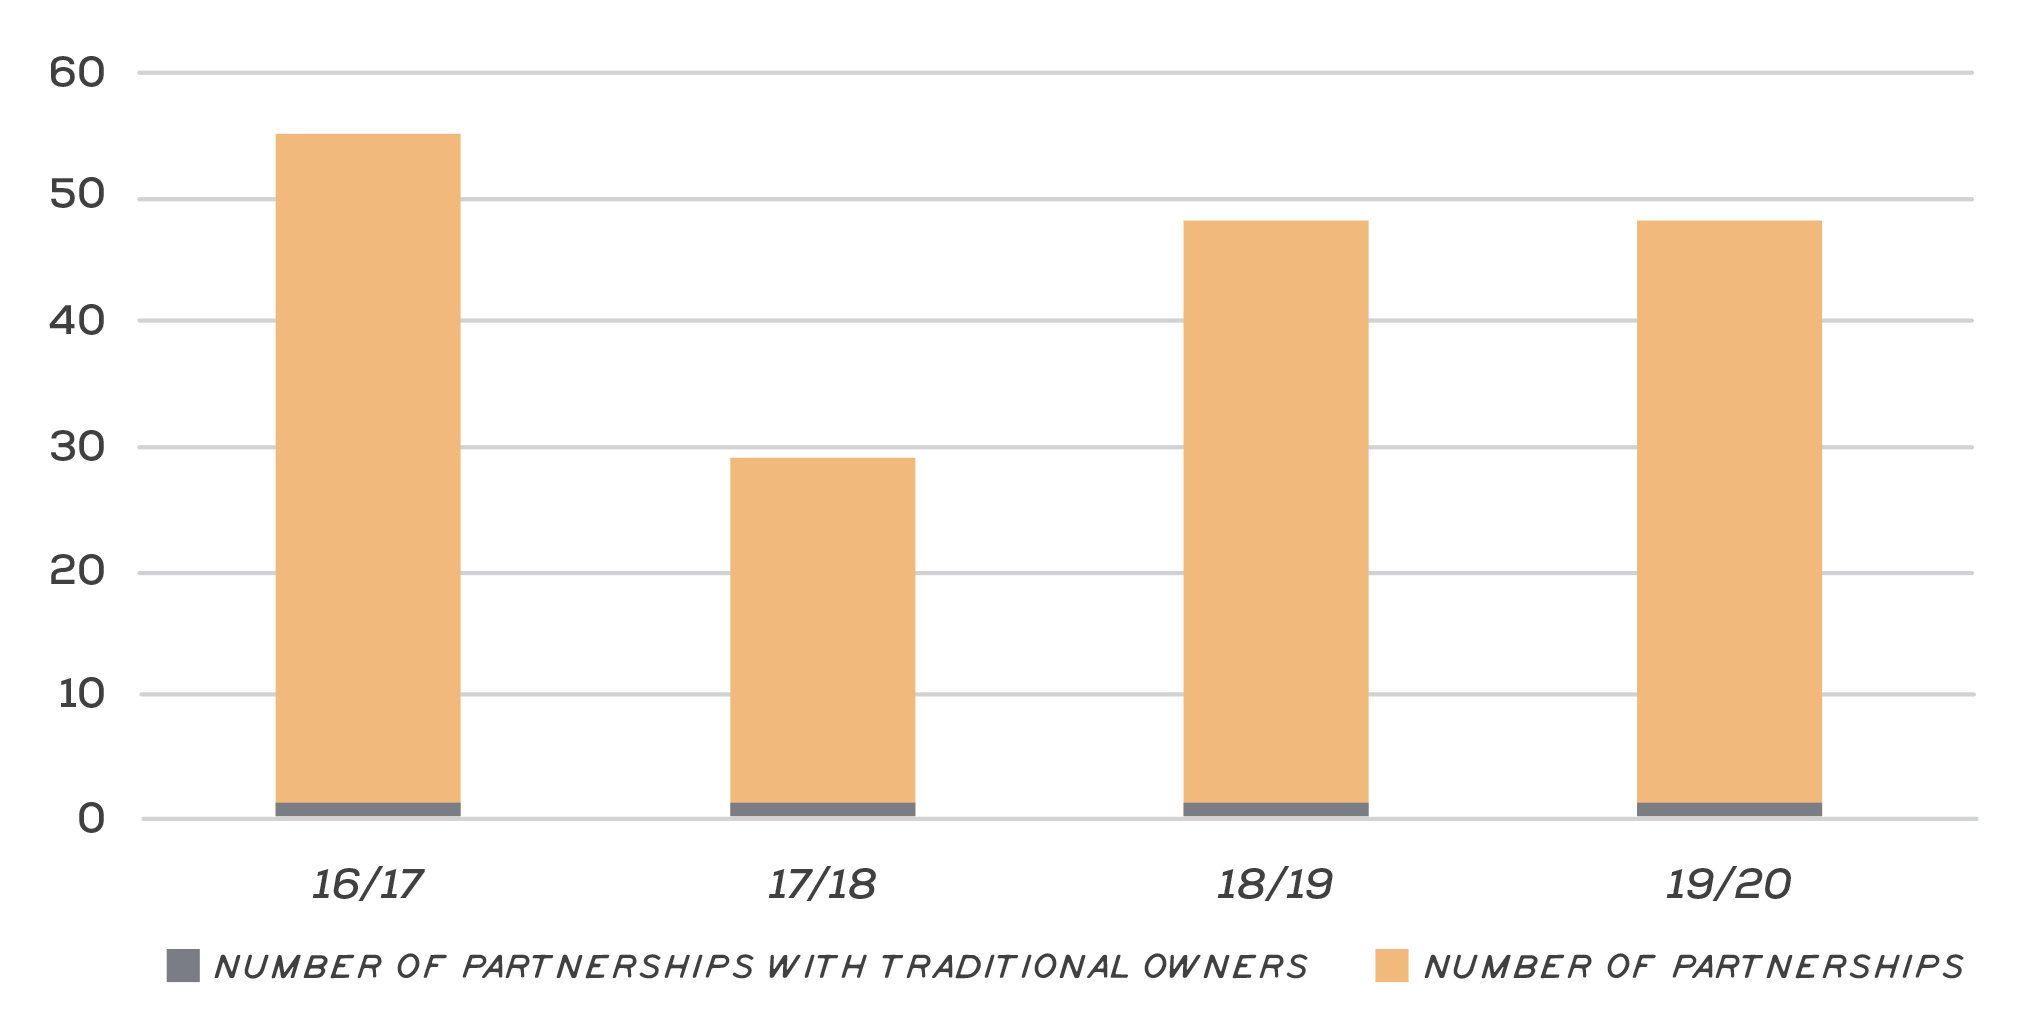 Number of partnerships in the Glenelg Hopkins region